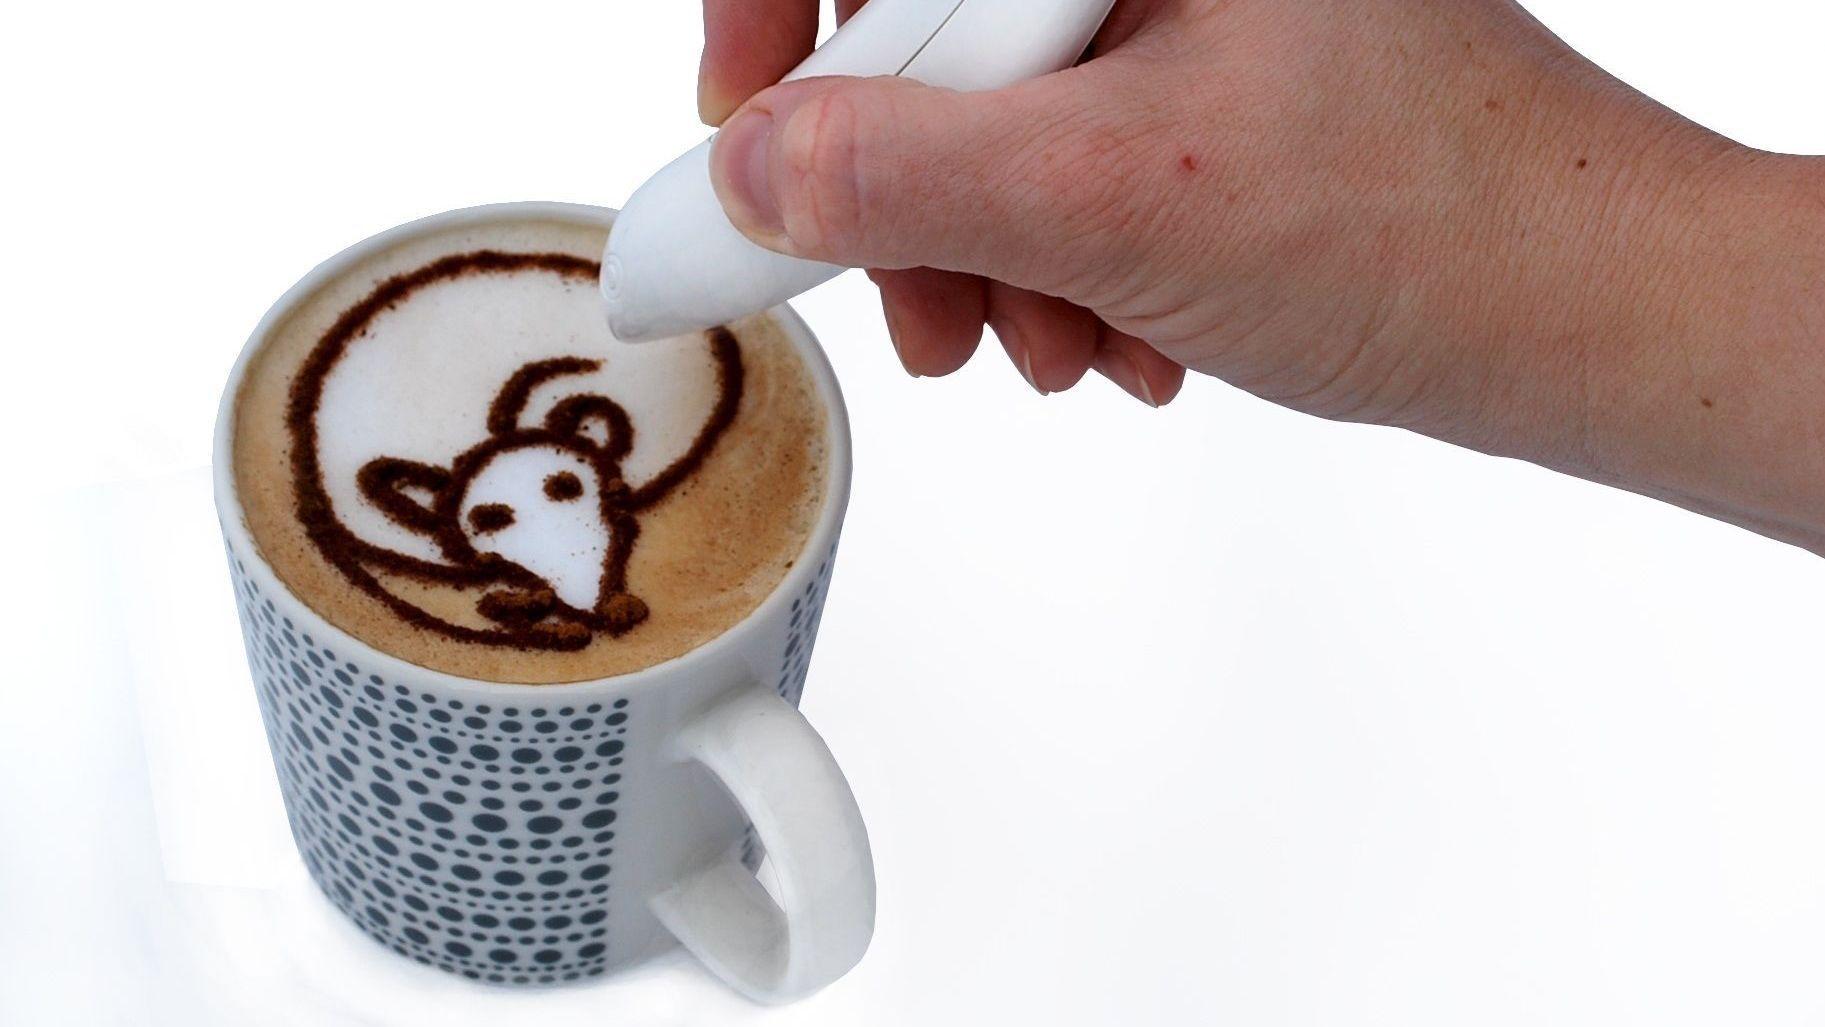 KREATIVT: Hvis tradisjonell lattekunst blir for utfordrende, kan det hende at denne pennen gjør det enklere for deg å dekorere latten. Foto: Cinnibird